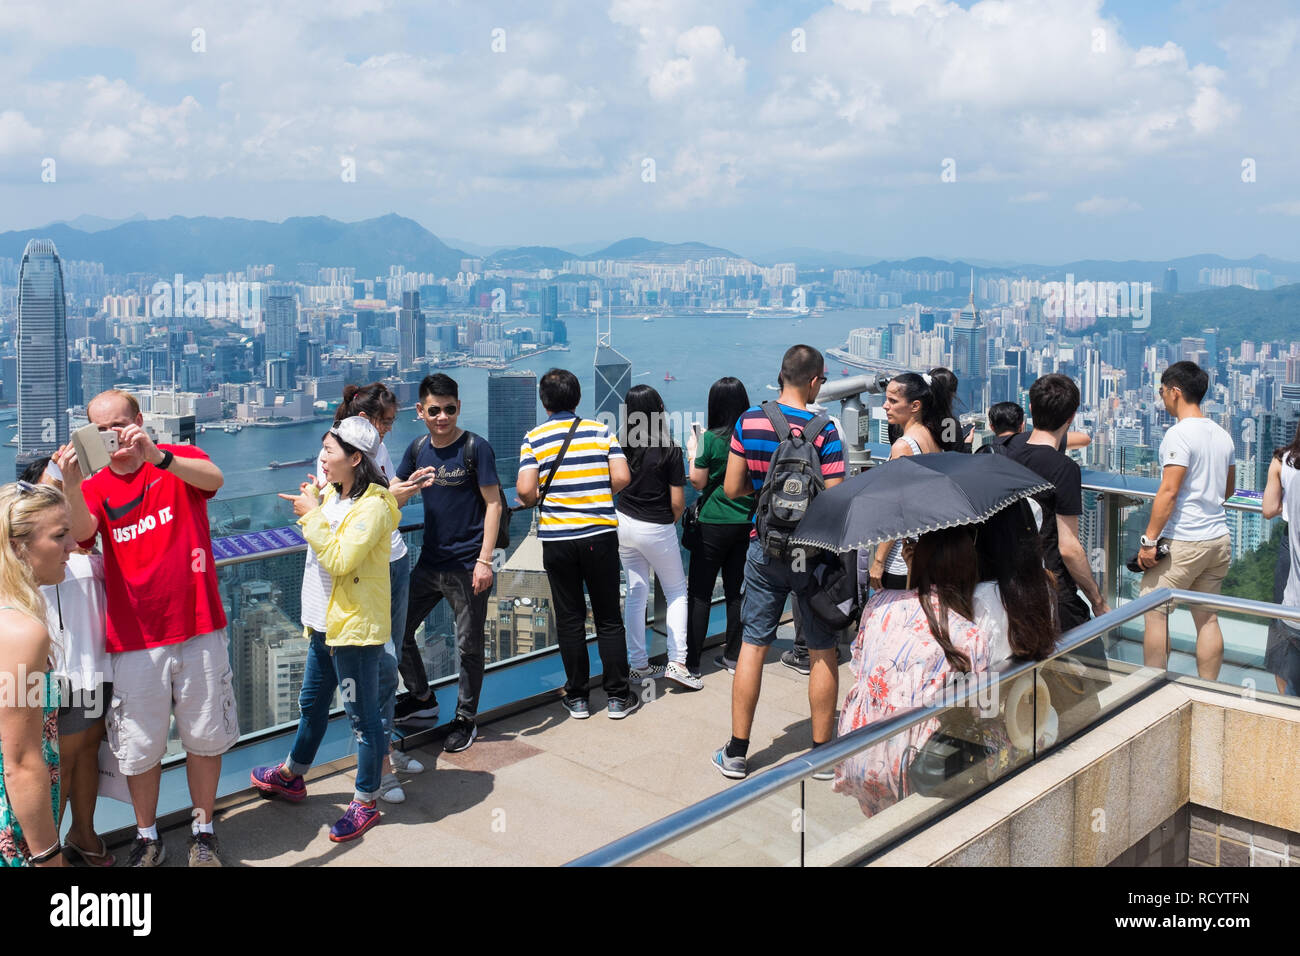 Les visiteurs sur la plate-forme panoramique au sommet de Victoria Peak, aussi connu comme le sommet de l'île de Hong Kong à la recherche vers le bas au niveau de la vue Banque D'Images